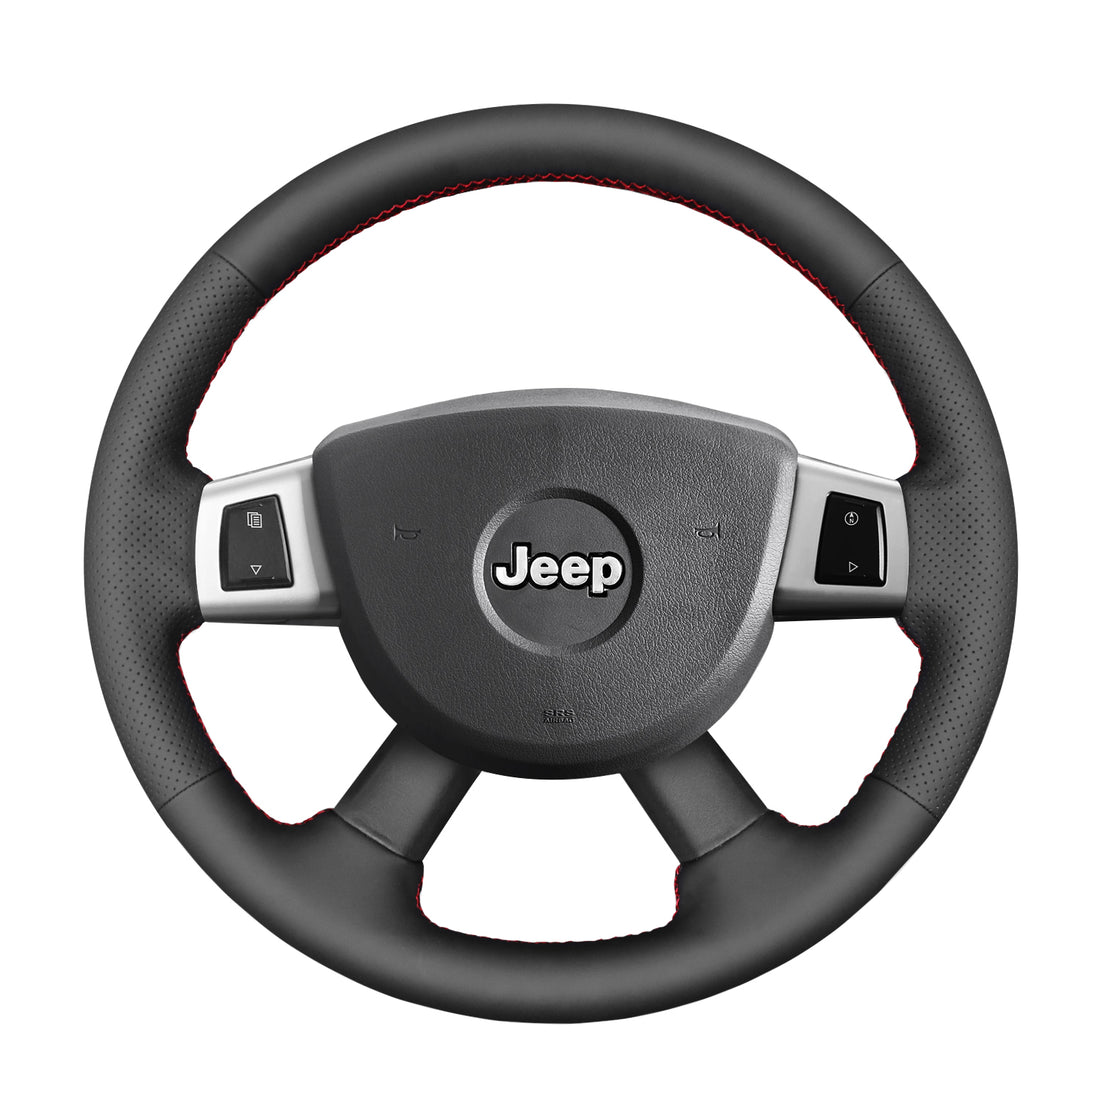 Jeep Commander (XK) 2008-2010 Steering wheel cover, steering wheel